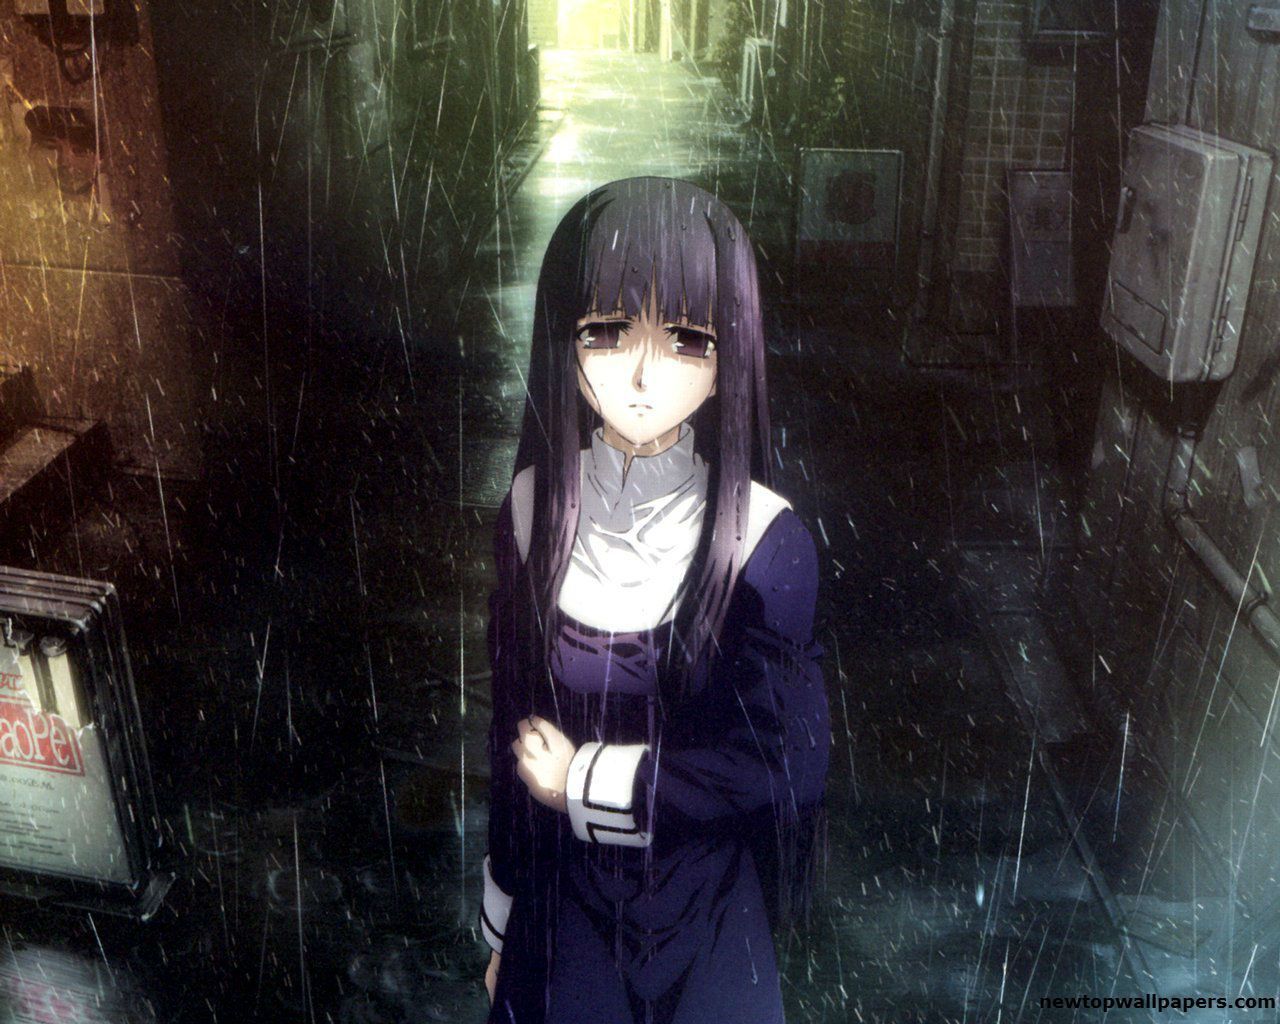 Anime Sad Rain Wallpapers